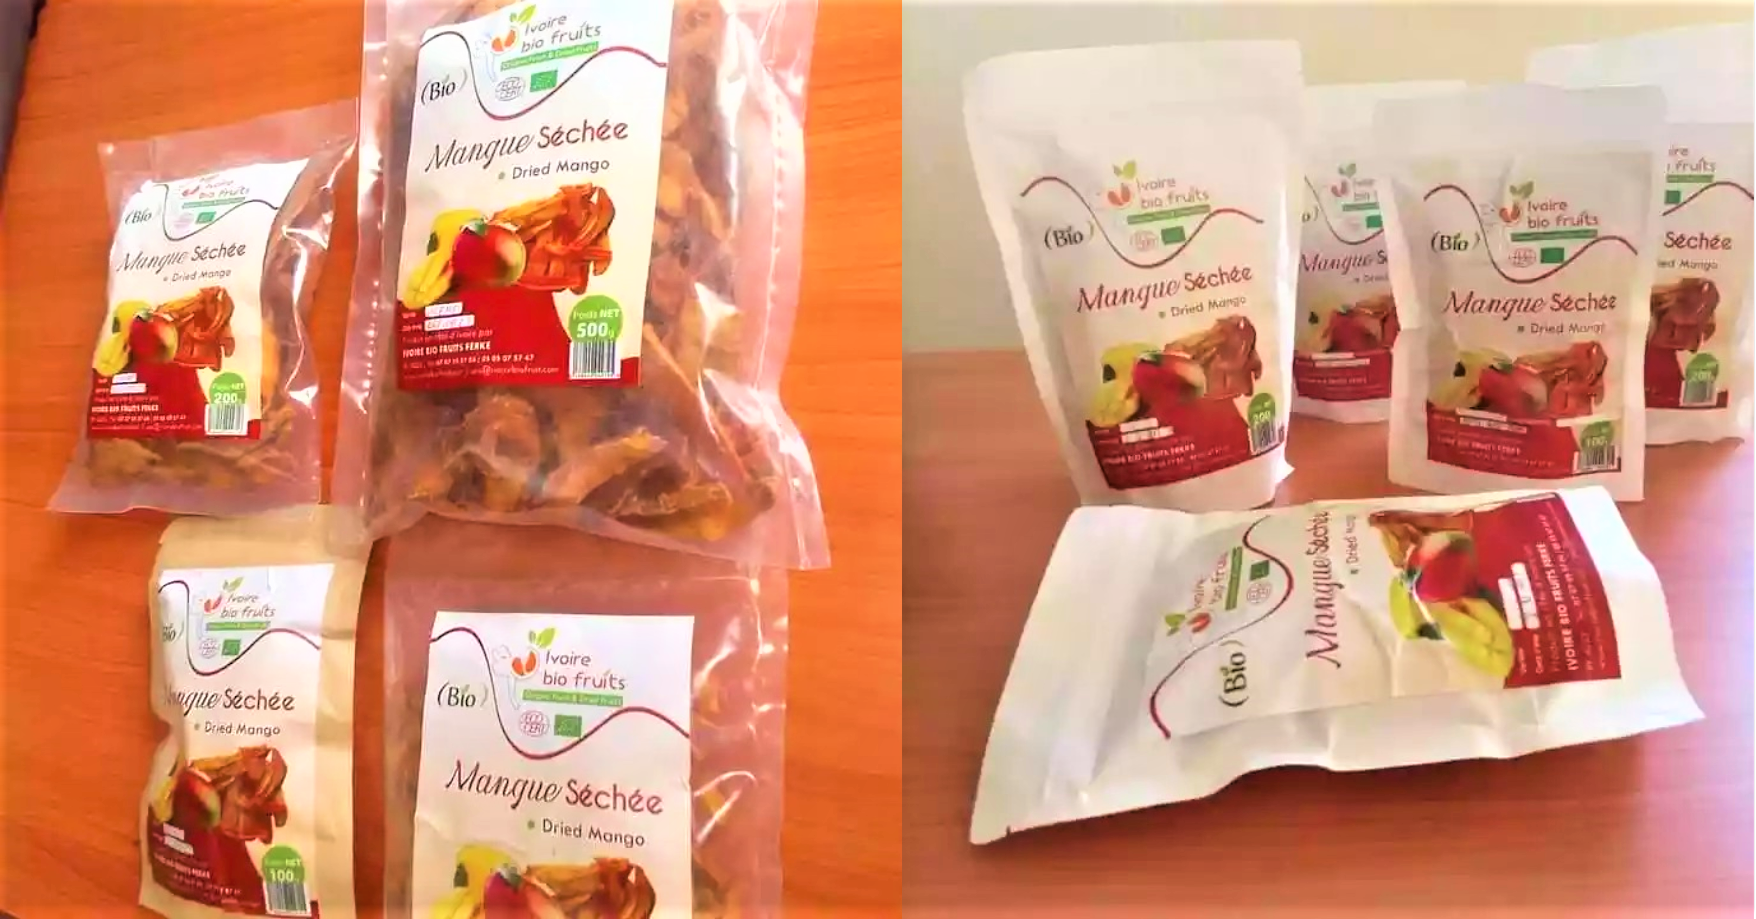 Agro-industrie : Ivoire Bio Fruits offre des fruits frais et séchés biologiques